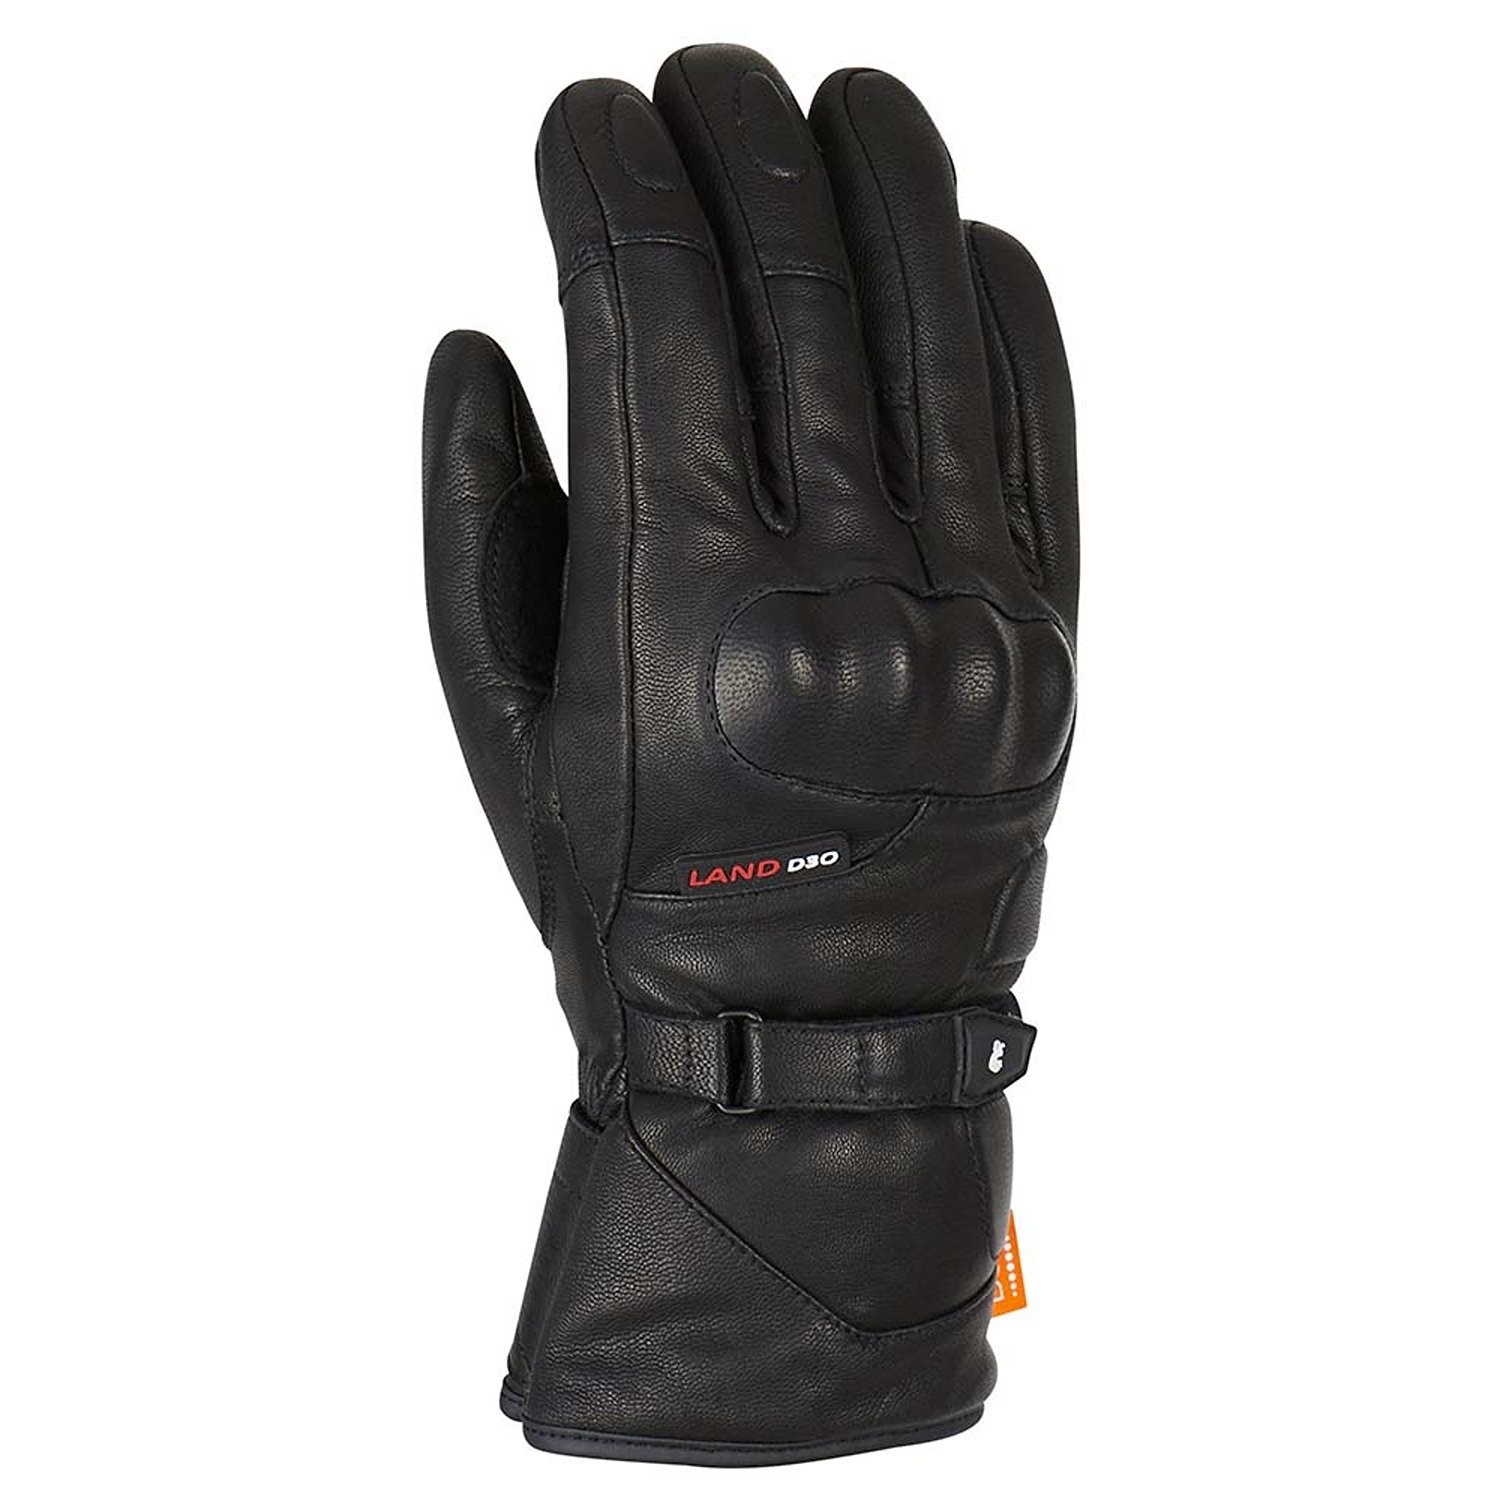 Image of EU Furygan Land DK D30 Gloves Black Taille 2XL